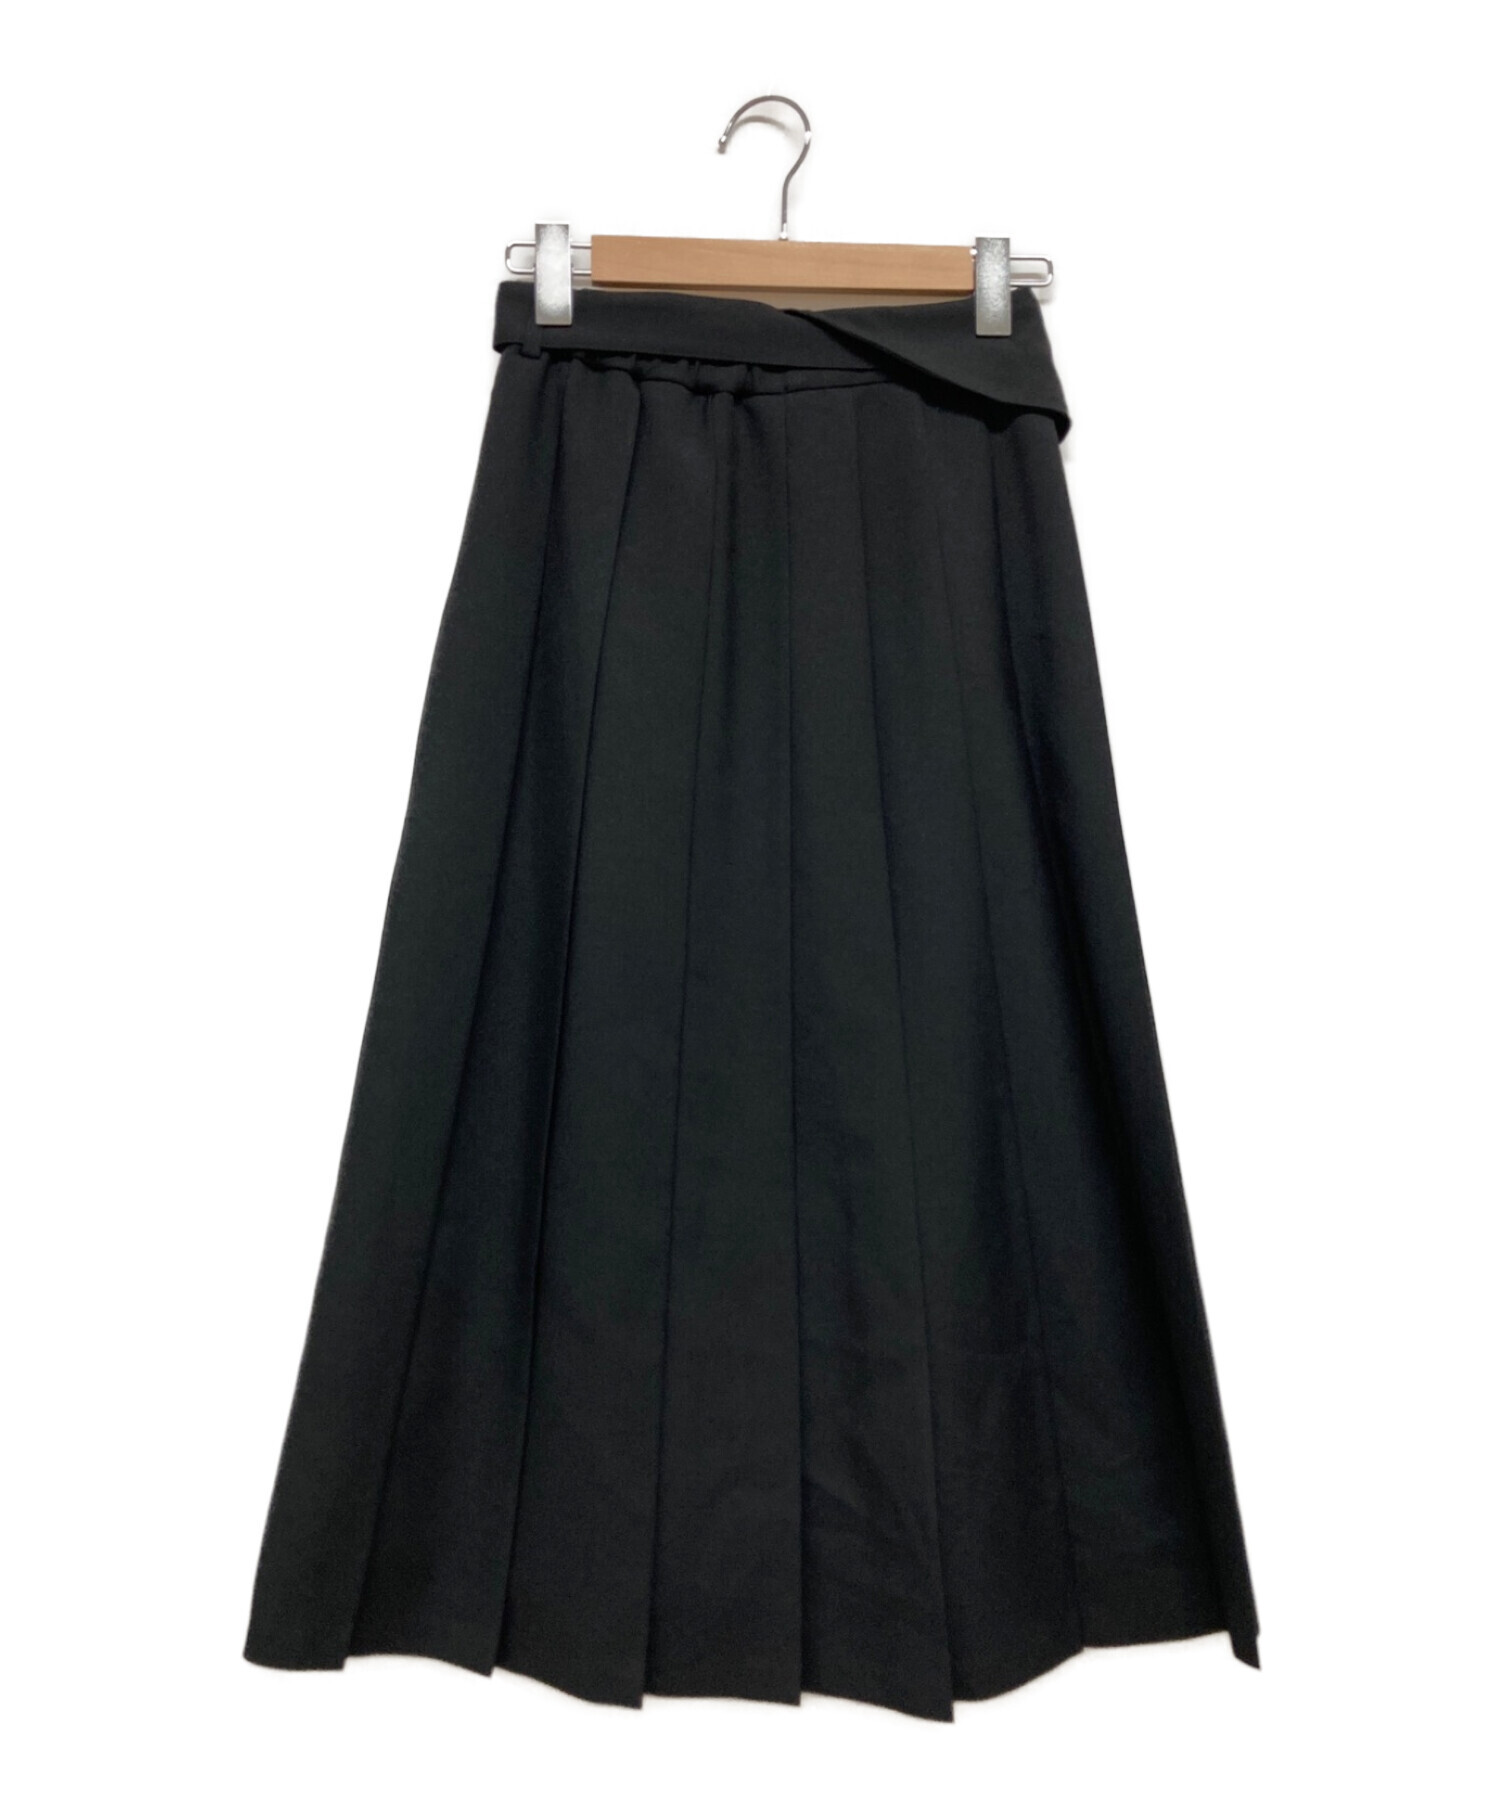 UNITED TOKYO (ユナイテッドトウキョウ) ビジーアートプリーツスカート ブラック サイズ:1